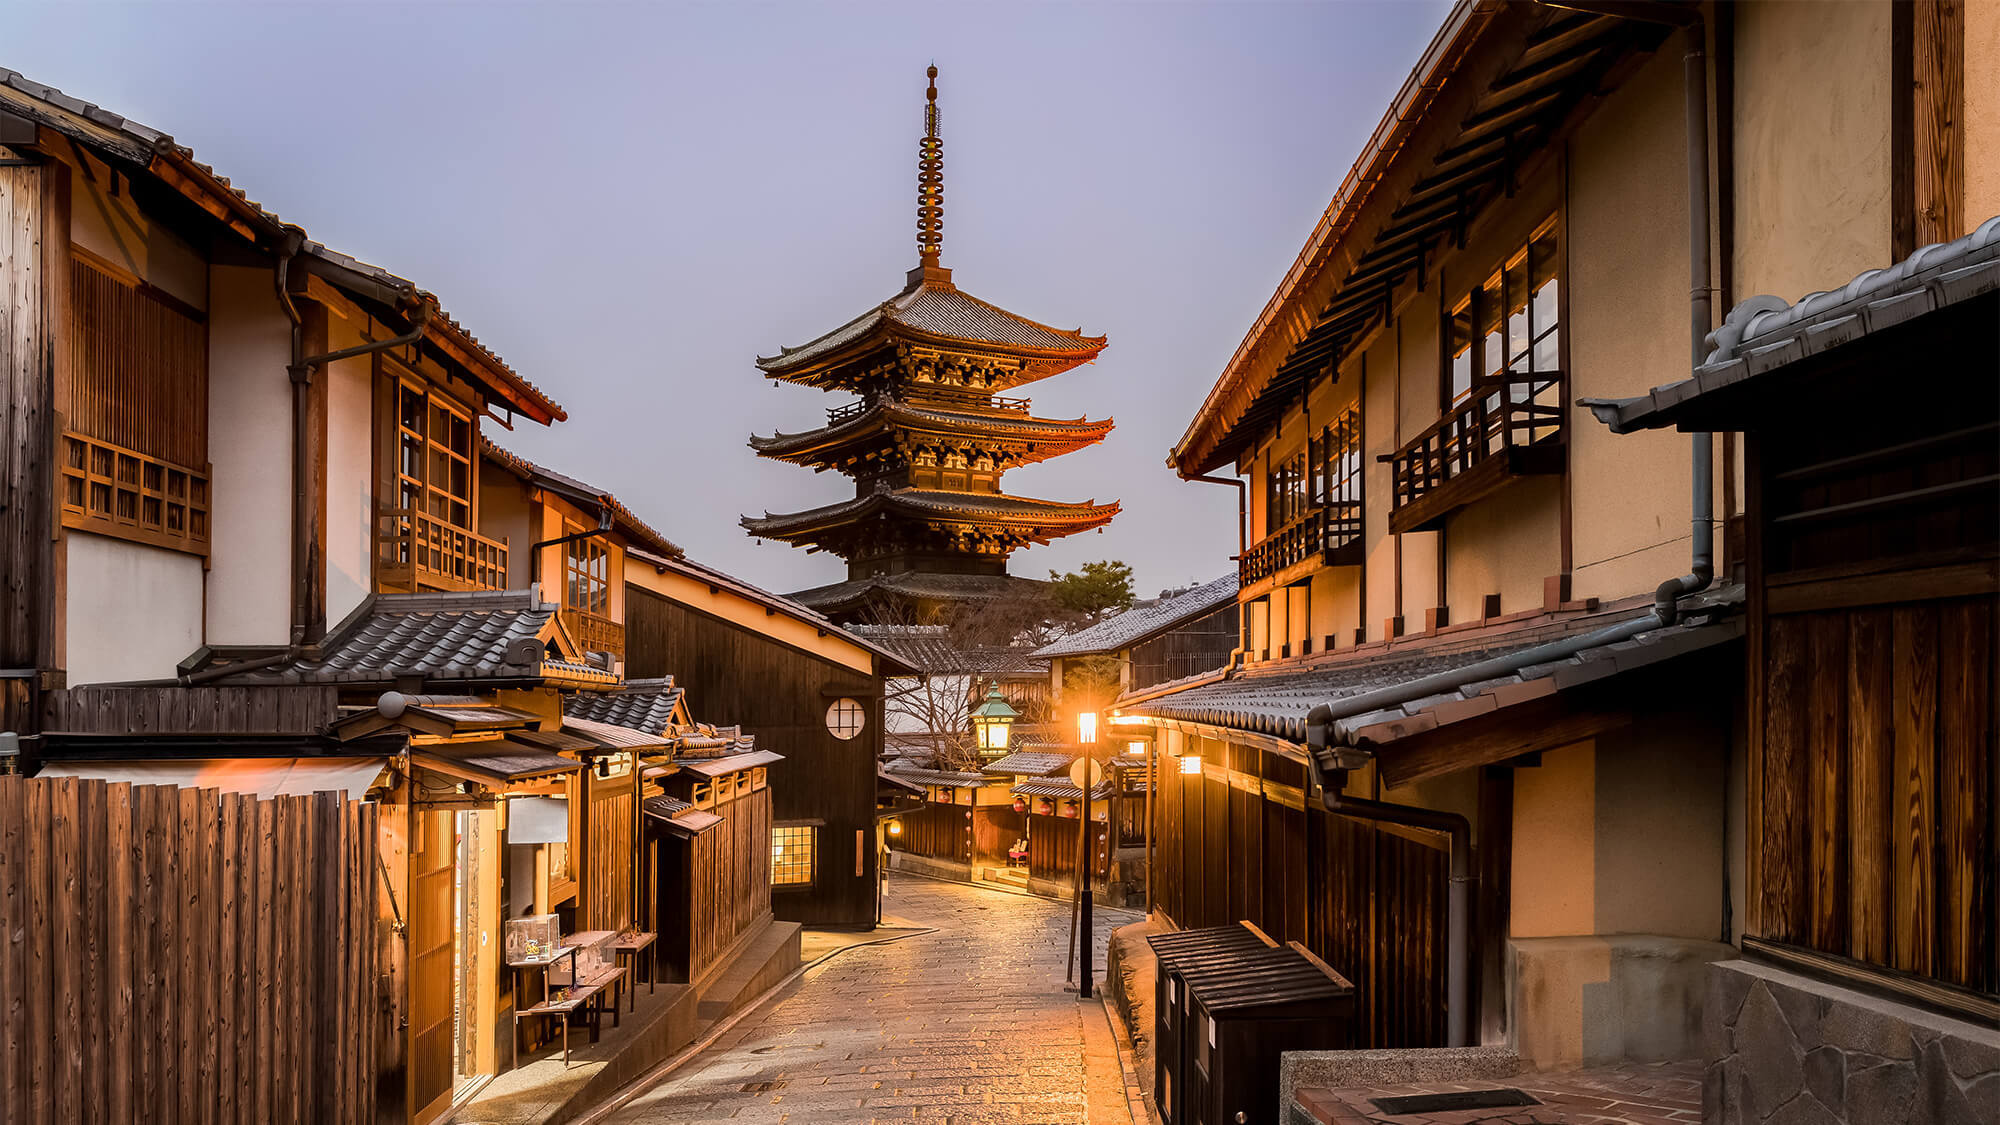 【八坂通】五重塔のある風景は趣ある京都ストリート